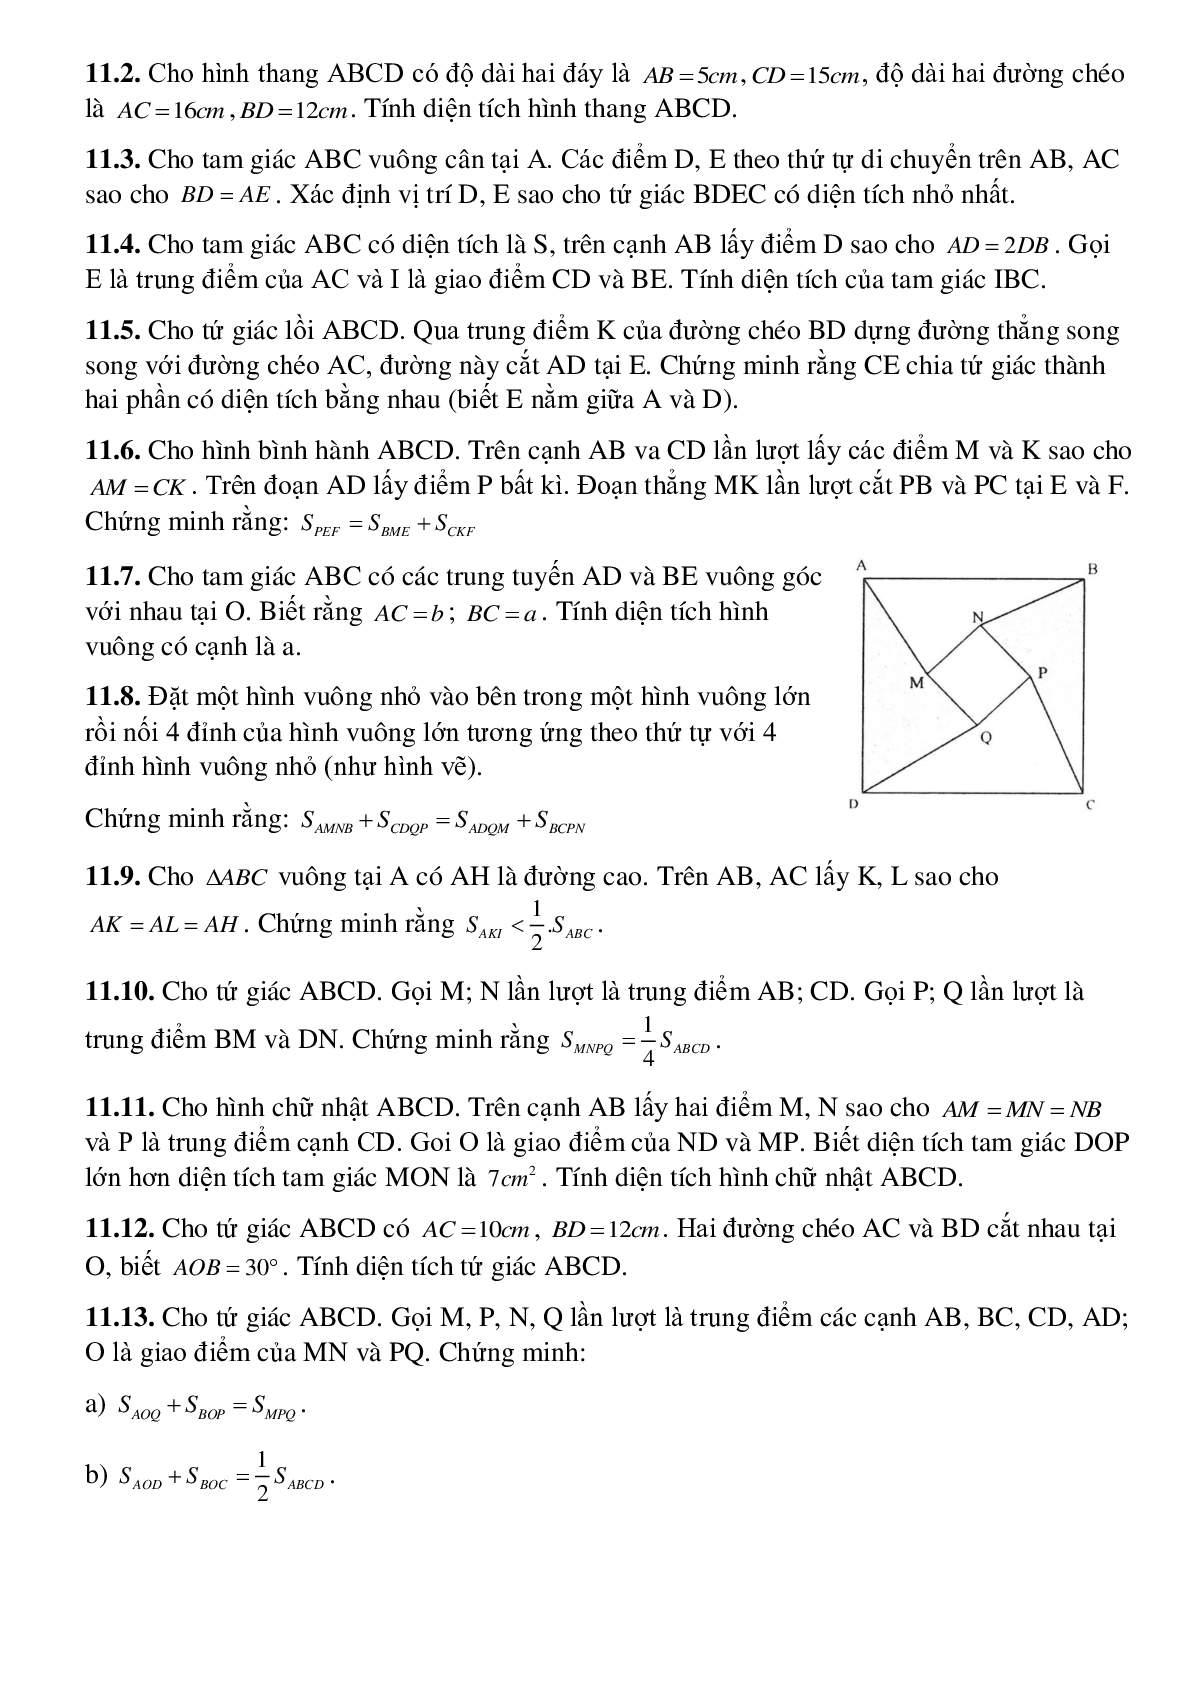 Diện tích đa giác (trang 8)